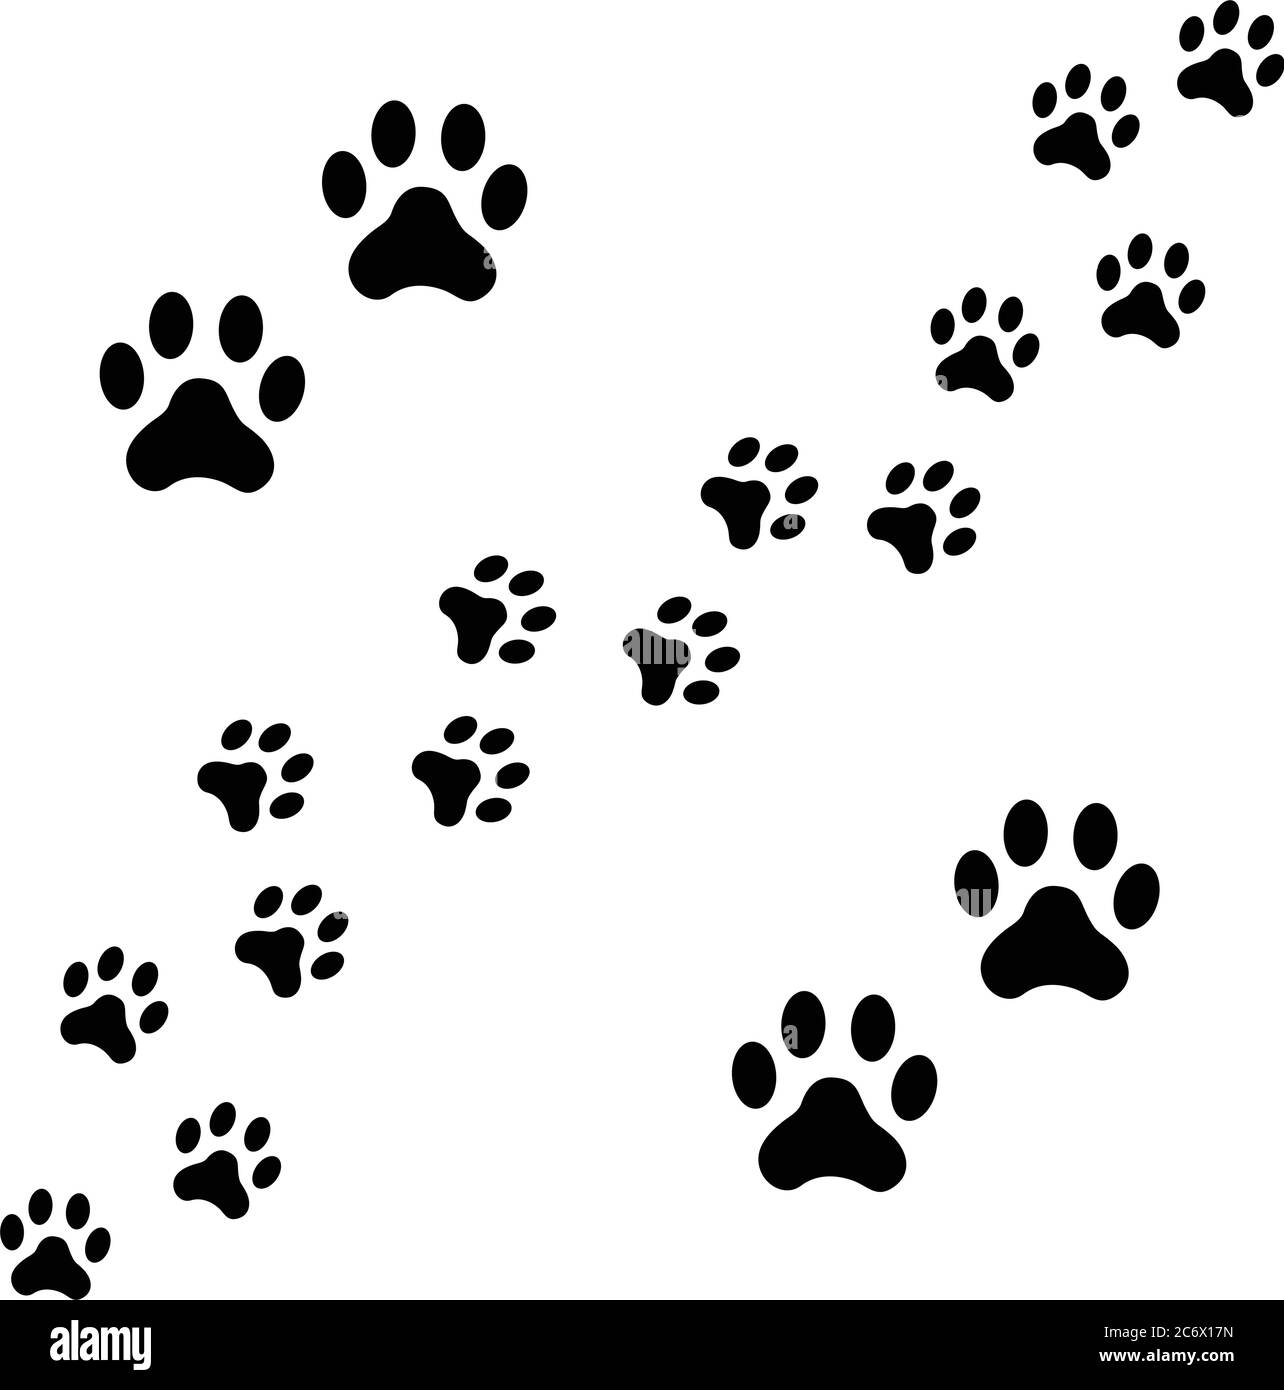 Schwarze Fußpfad Spur von Hund Spuren zu Fuß zufällig. Tier Fußabdrücke,  Hund oder Katze Pfoten drucken isoliert auf weißem Hintergrund.  Vektordarstellung von Stock-Vektorgrafik - Alamy